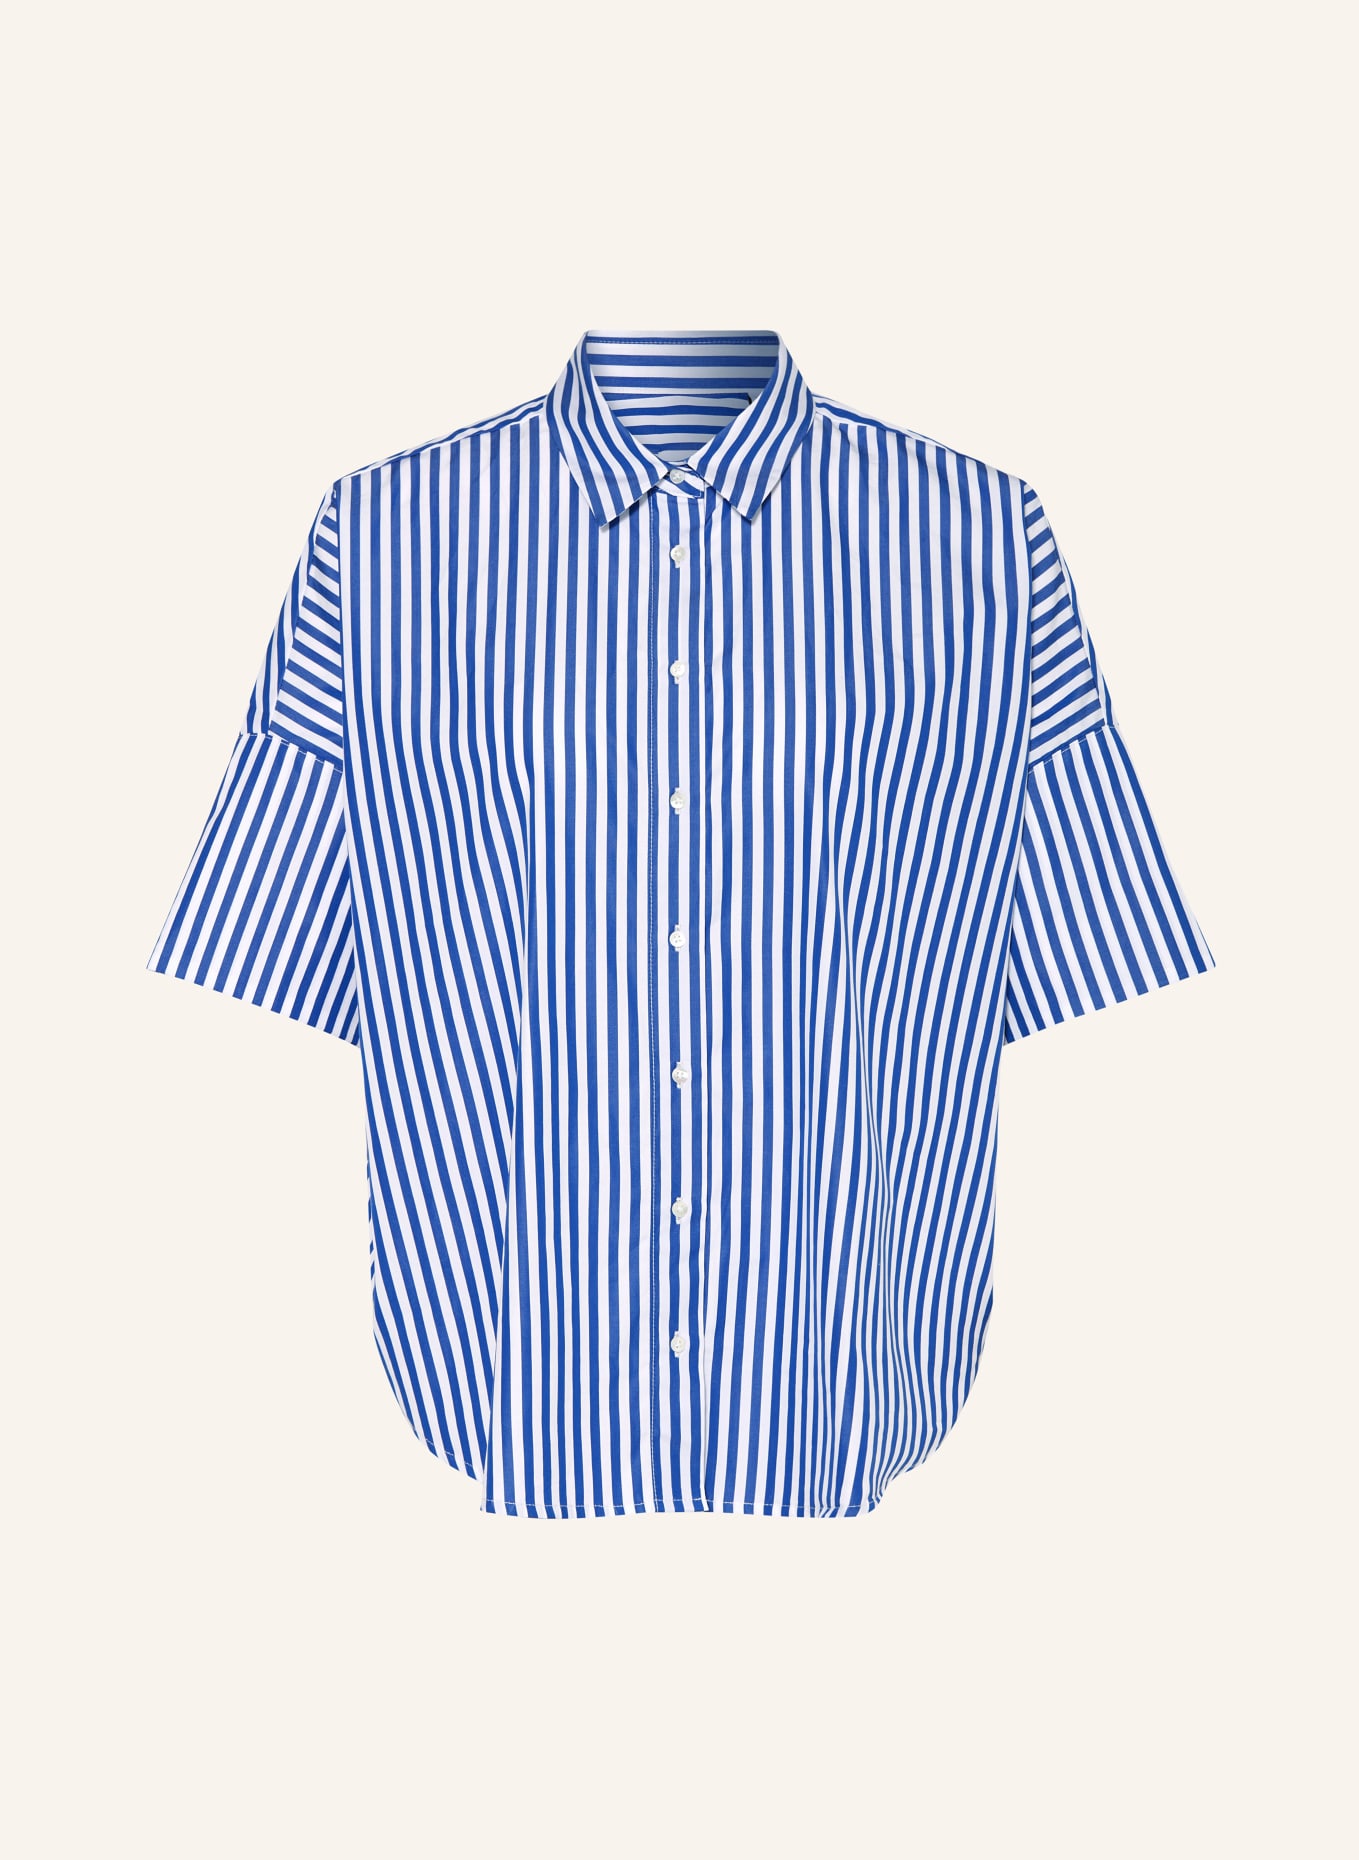 TONNO & PANNA Shirt blouse, Color: WHITE/ BLUE (Image 1)